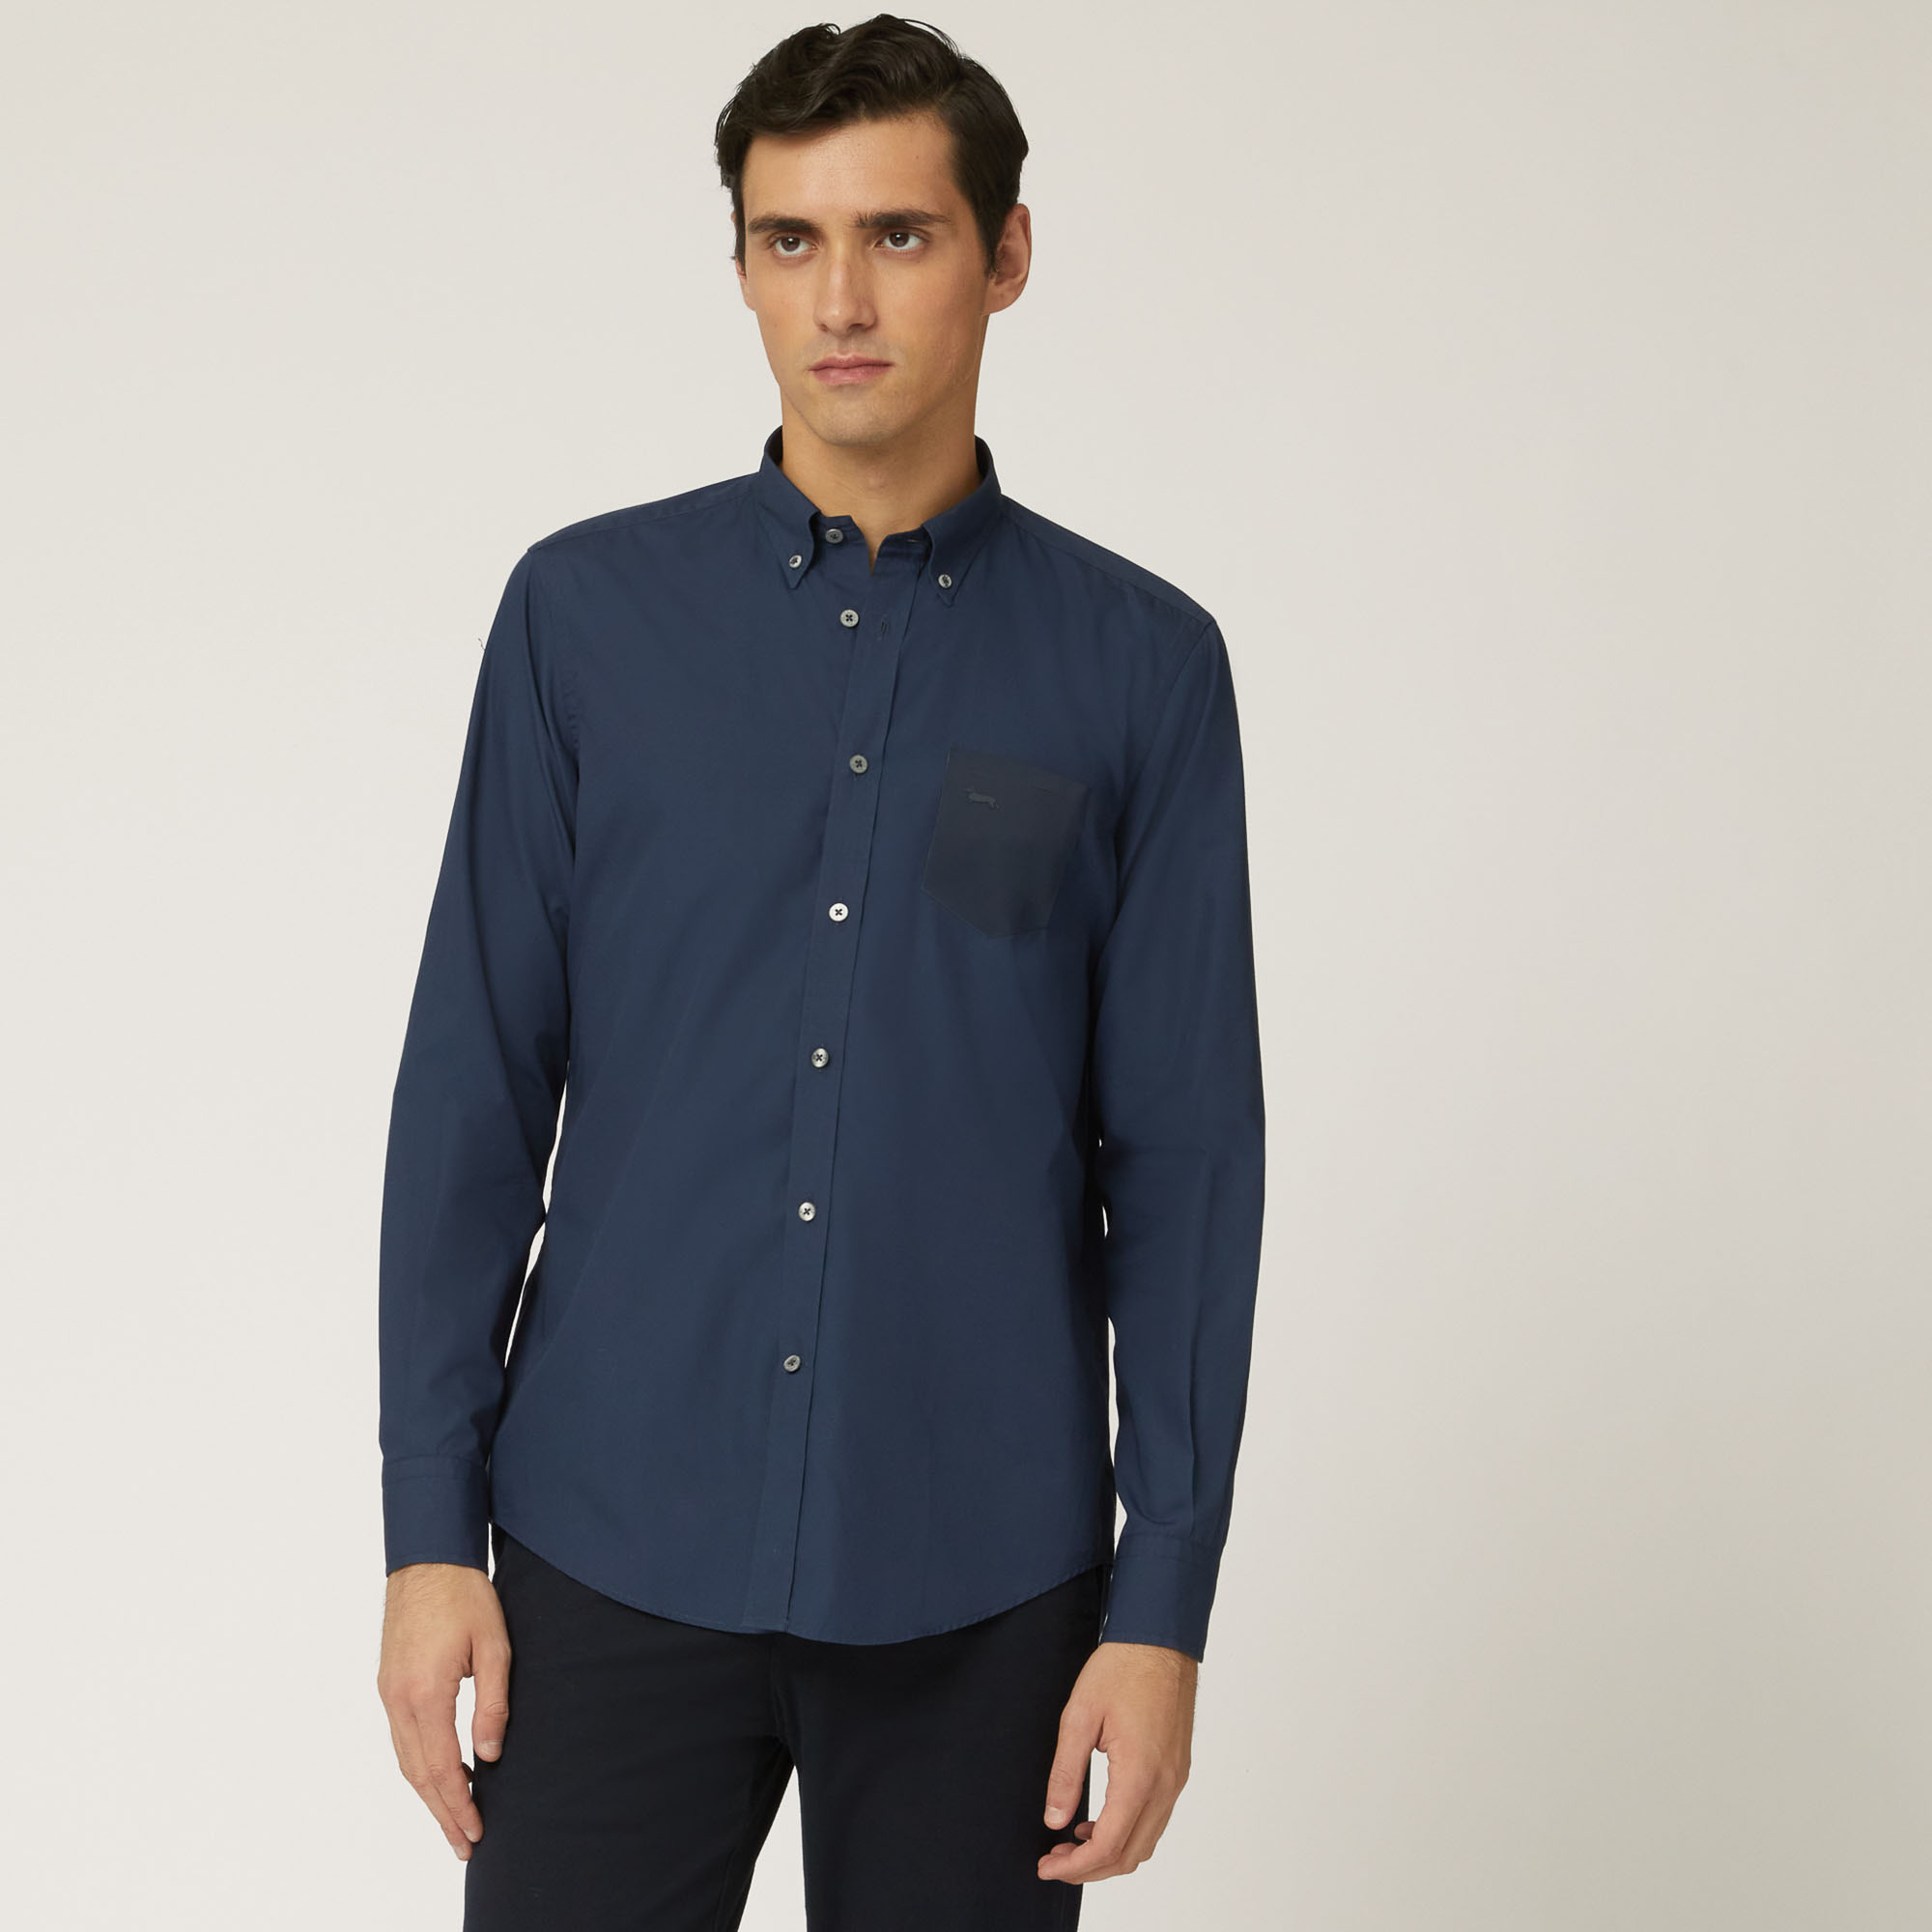 Camicia In Cotone Con Taschino A Contrasto, Light Blue, large